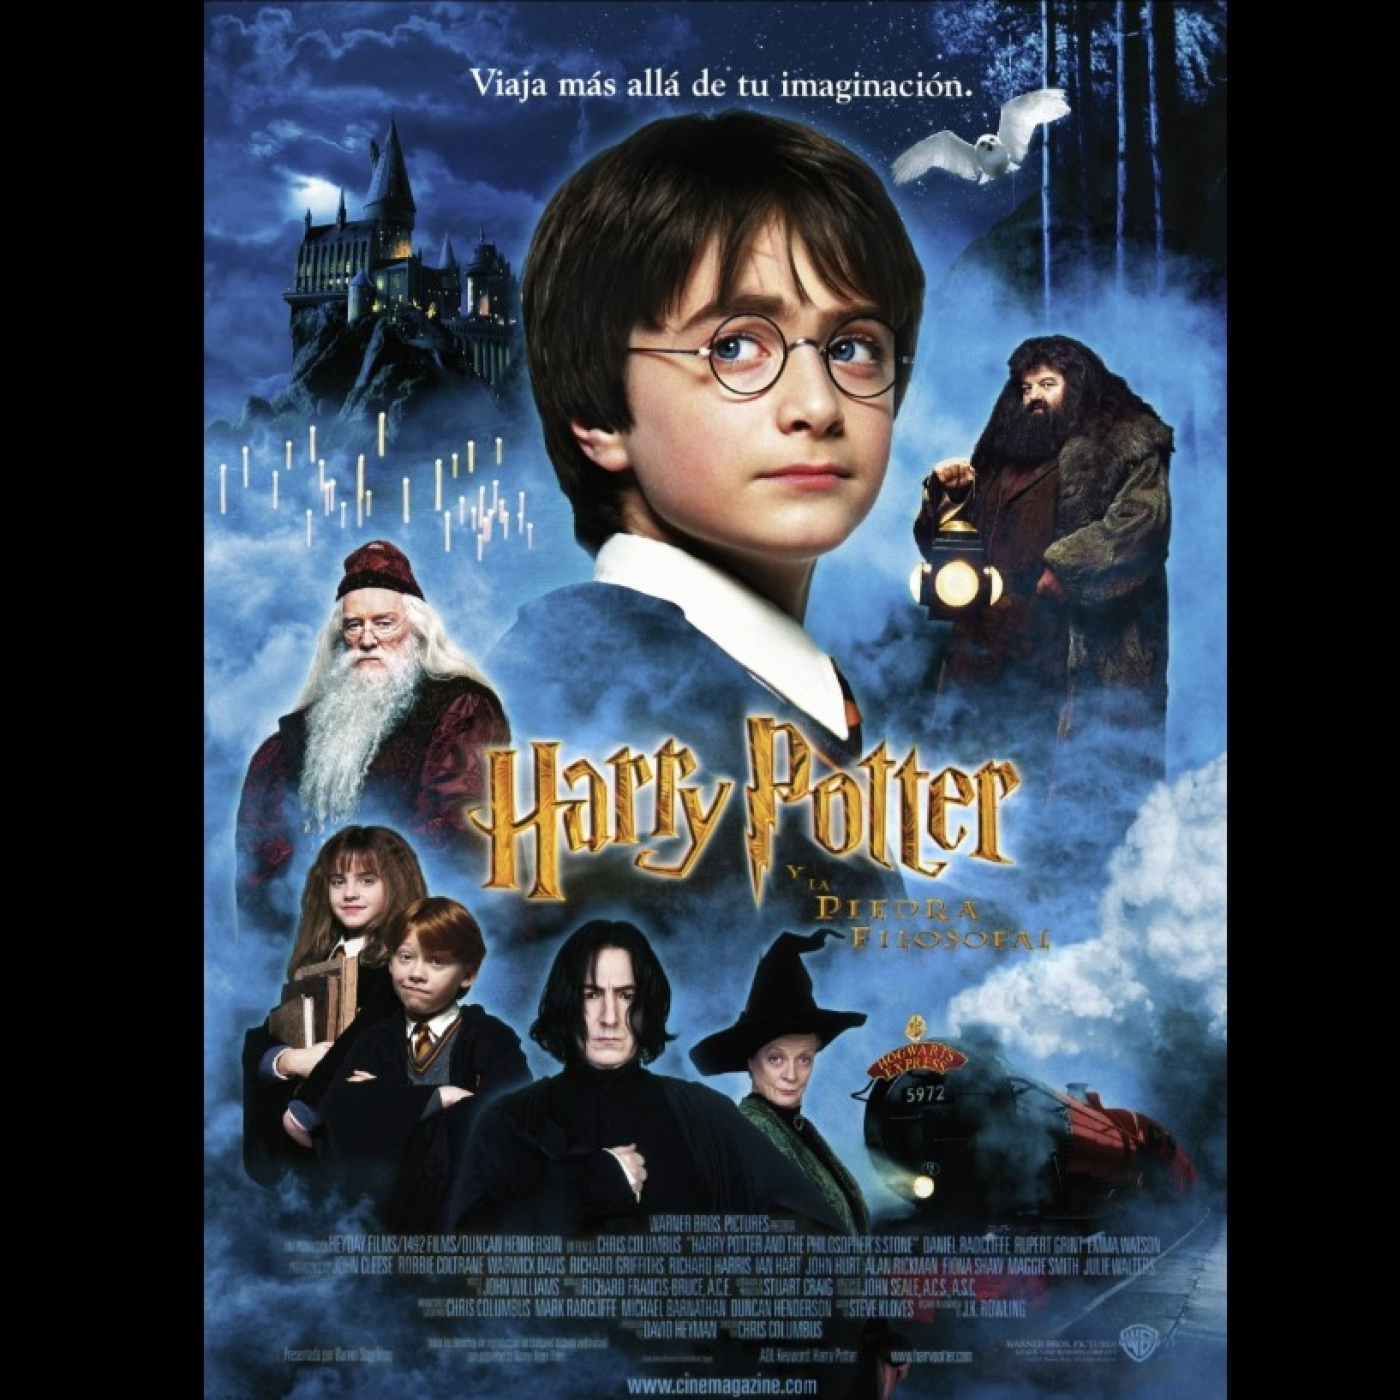 Peticiones Oyentes - Harry Potter y la piedra filosofal - 2001